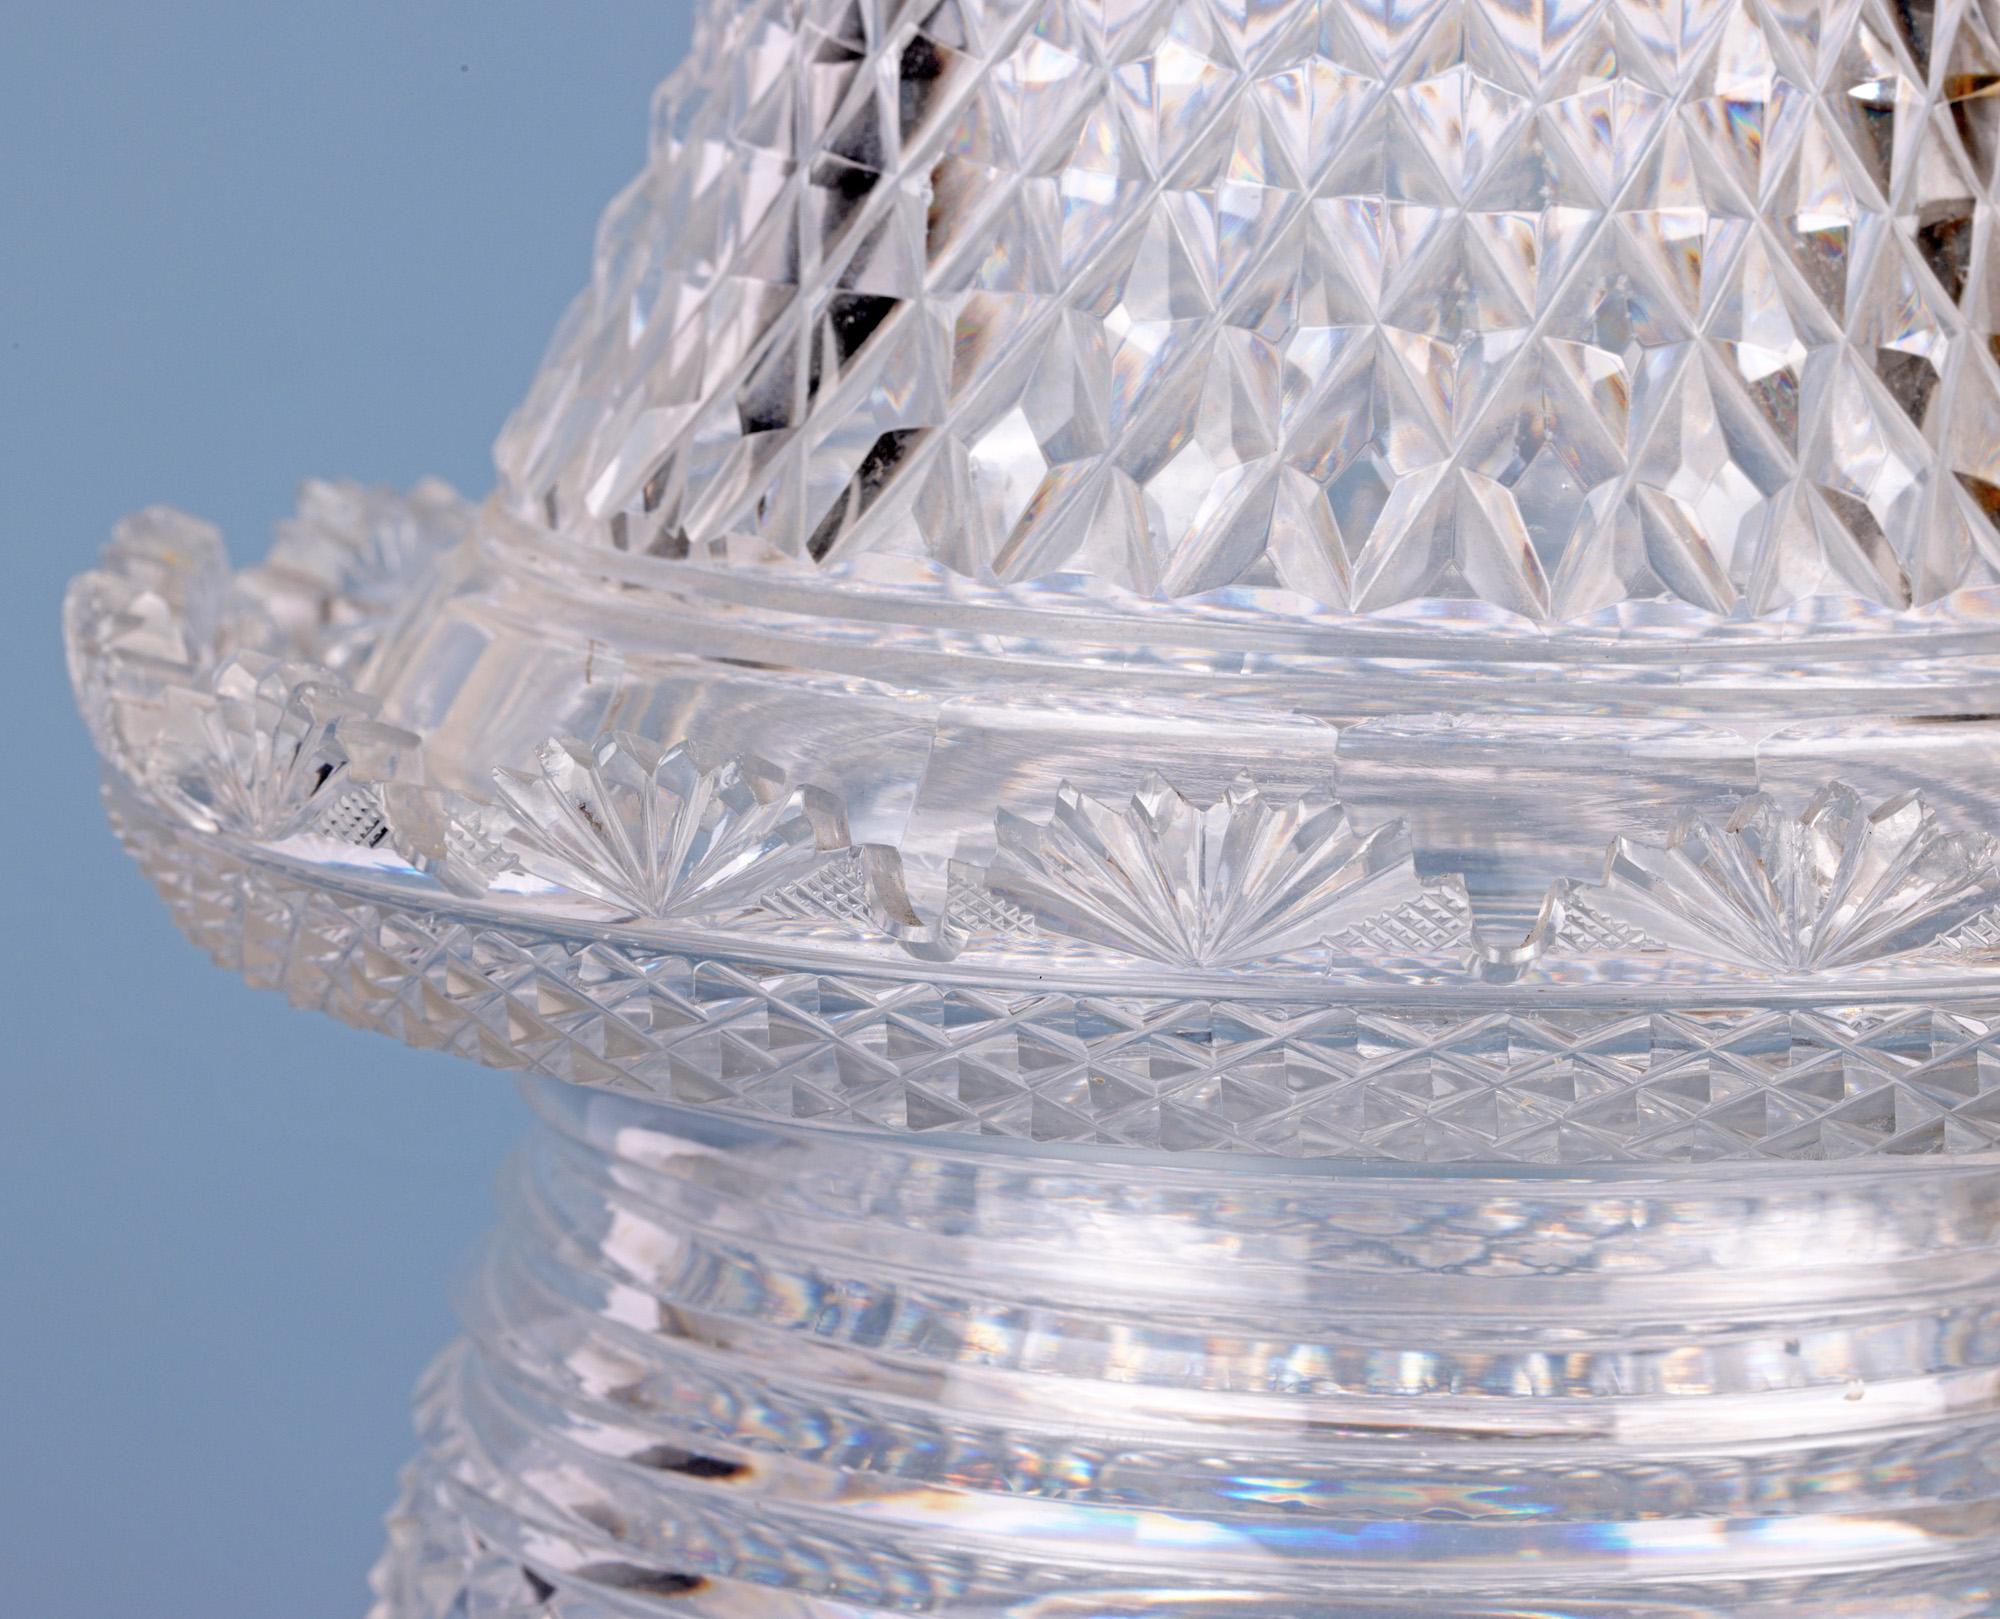 Hand-Crafted Regency Cut Glass Lidded Pedestal Jar For Sale